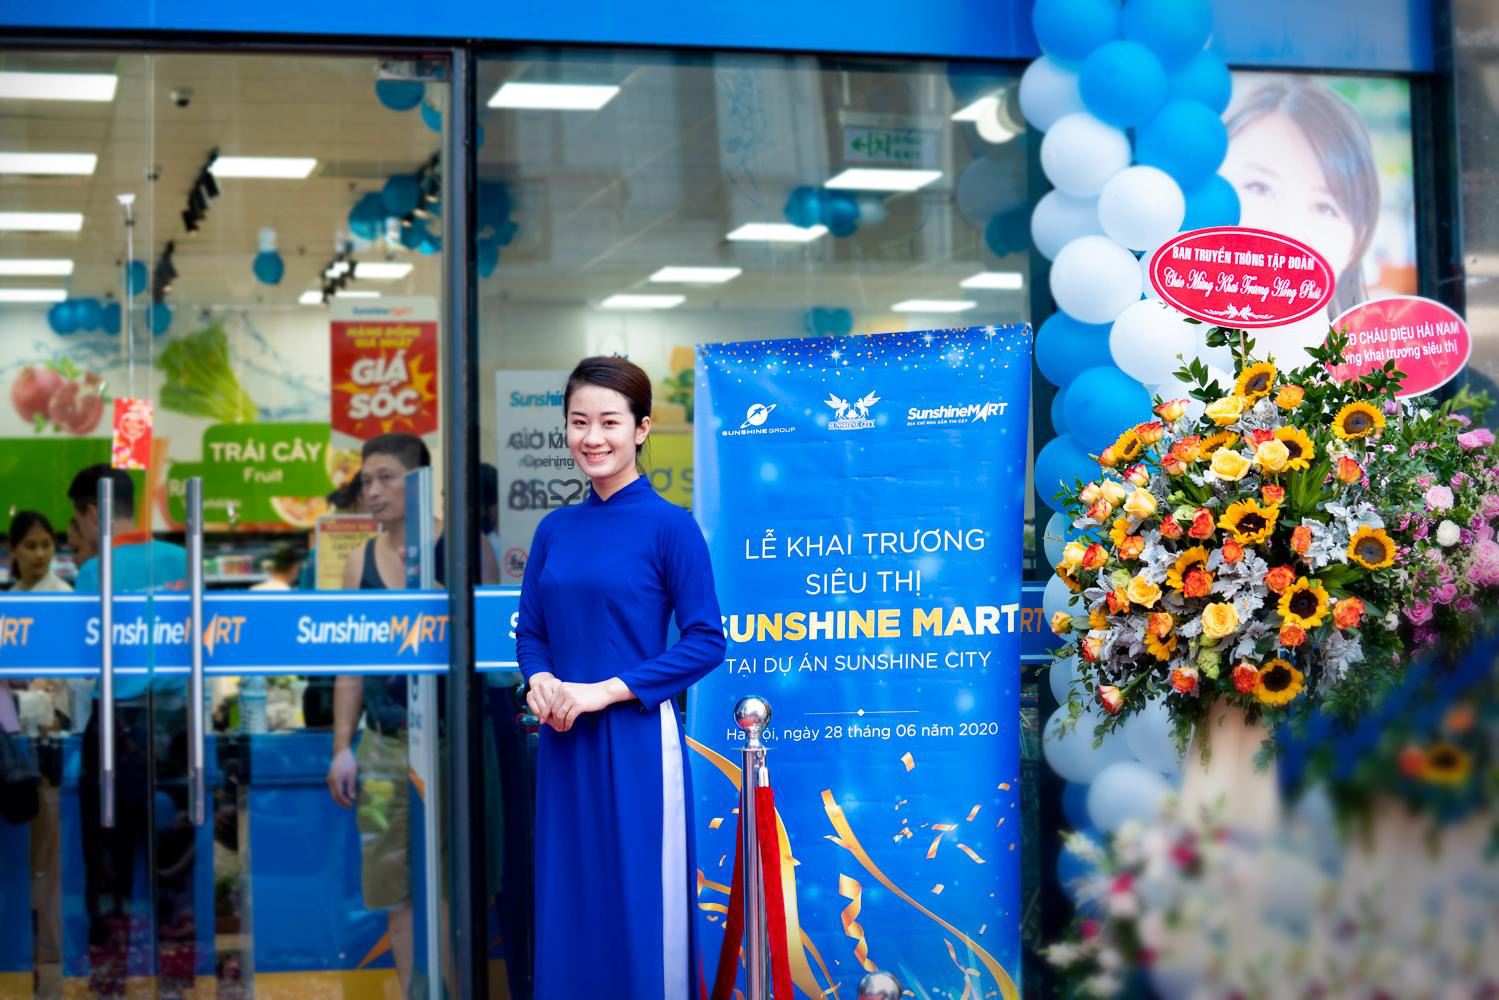 Sunshine City khai trương siêu thị Sunshine Mart - “Thế giới mua sắm” ngay dưới chân tòa nhà cho cư dân - Ảnh 3.